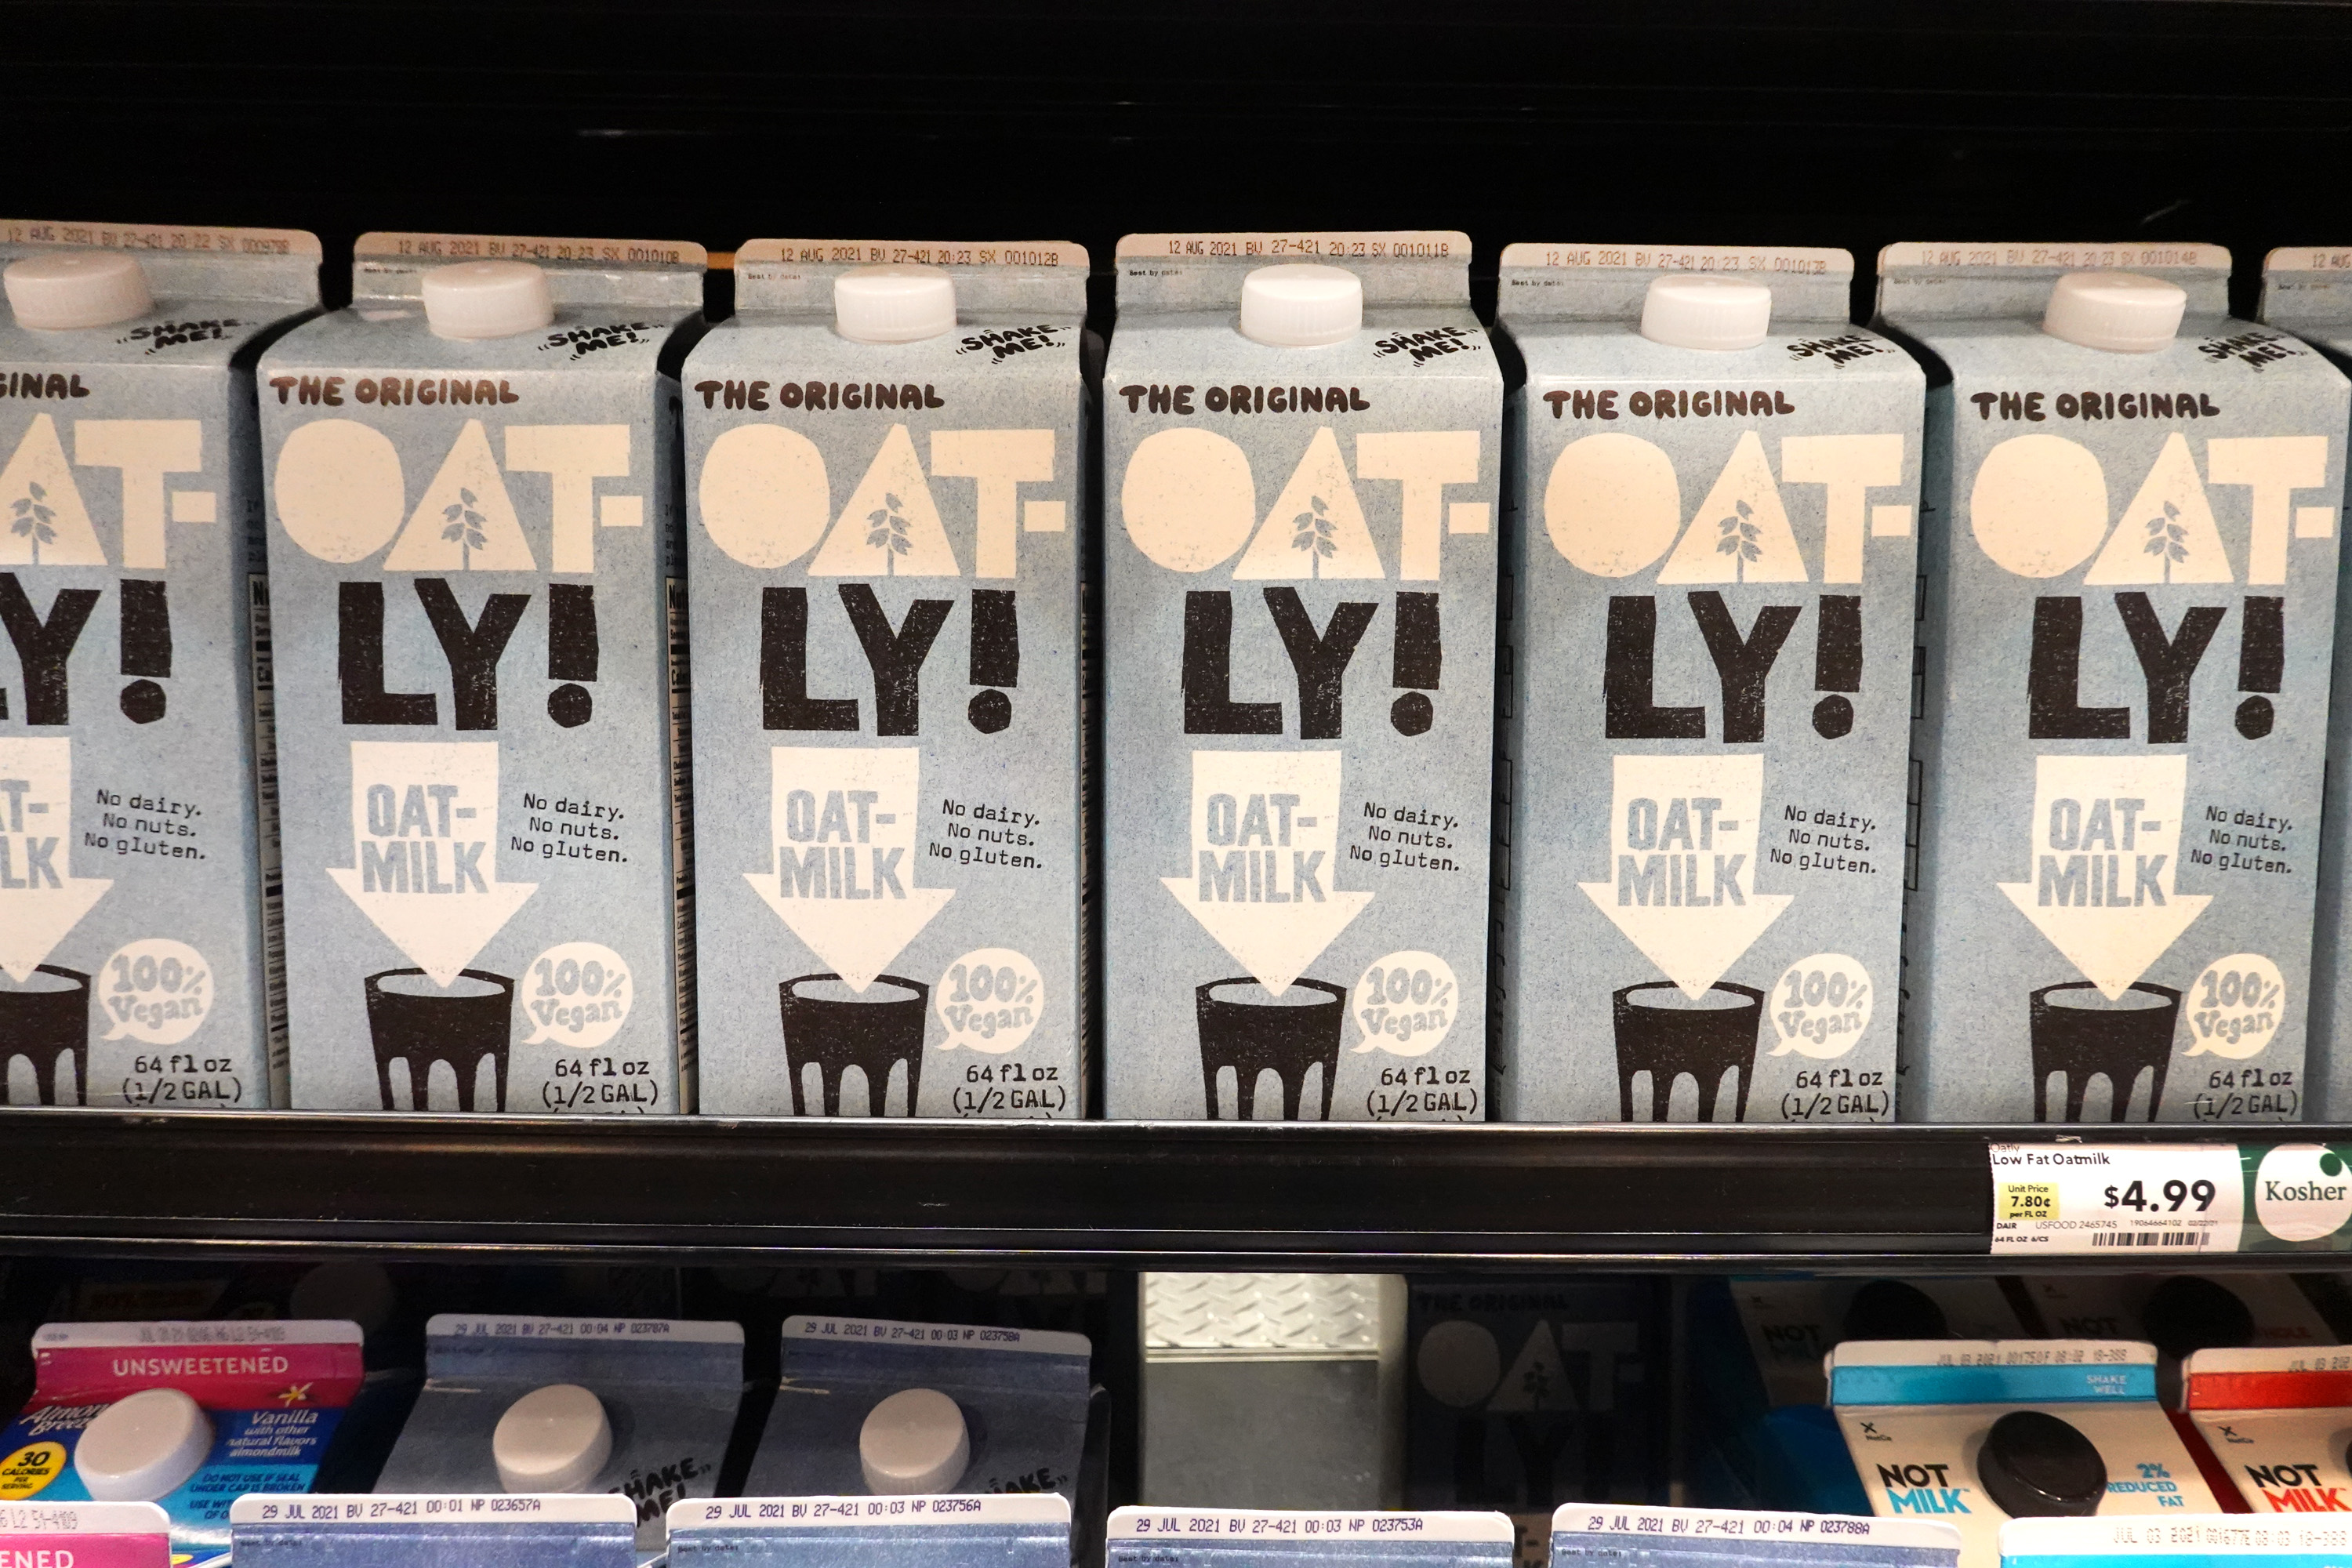 Oat-ly oat milk cartons on a grocery store shelf